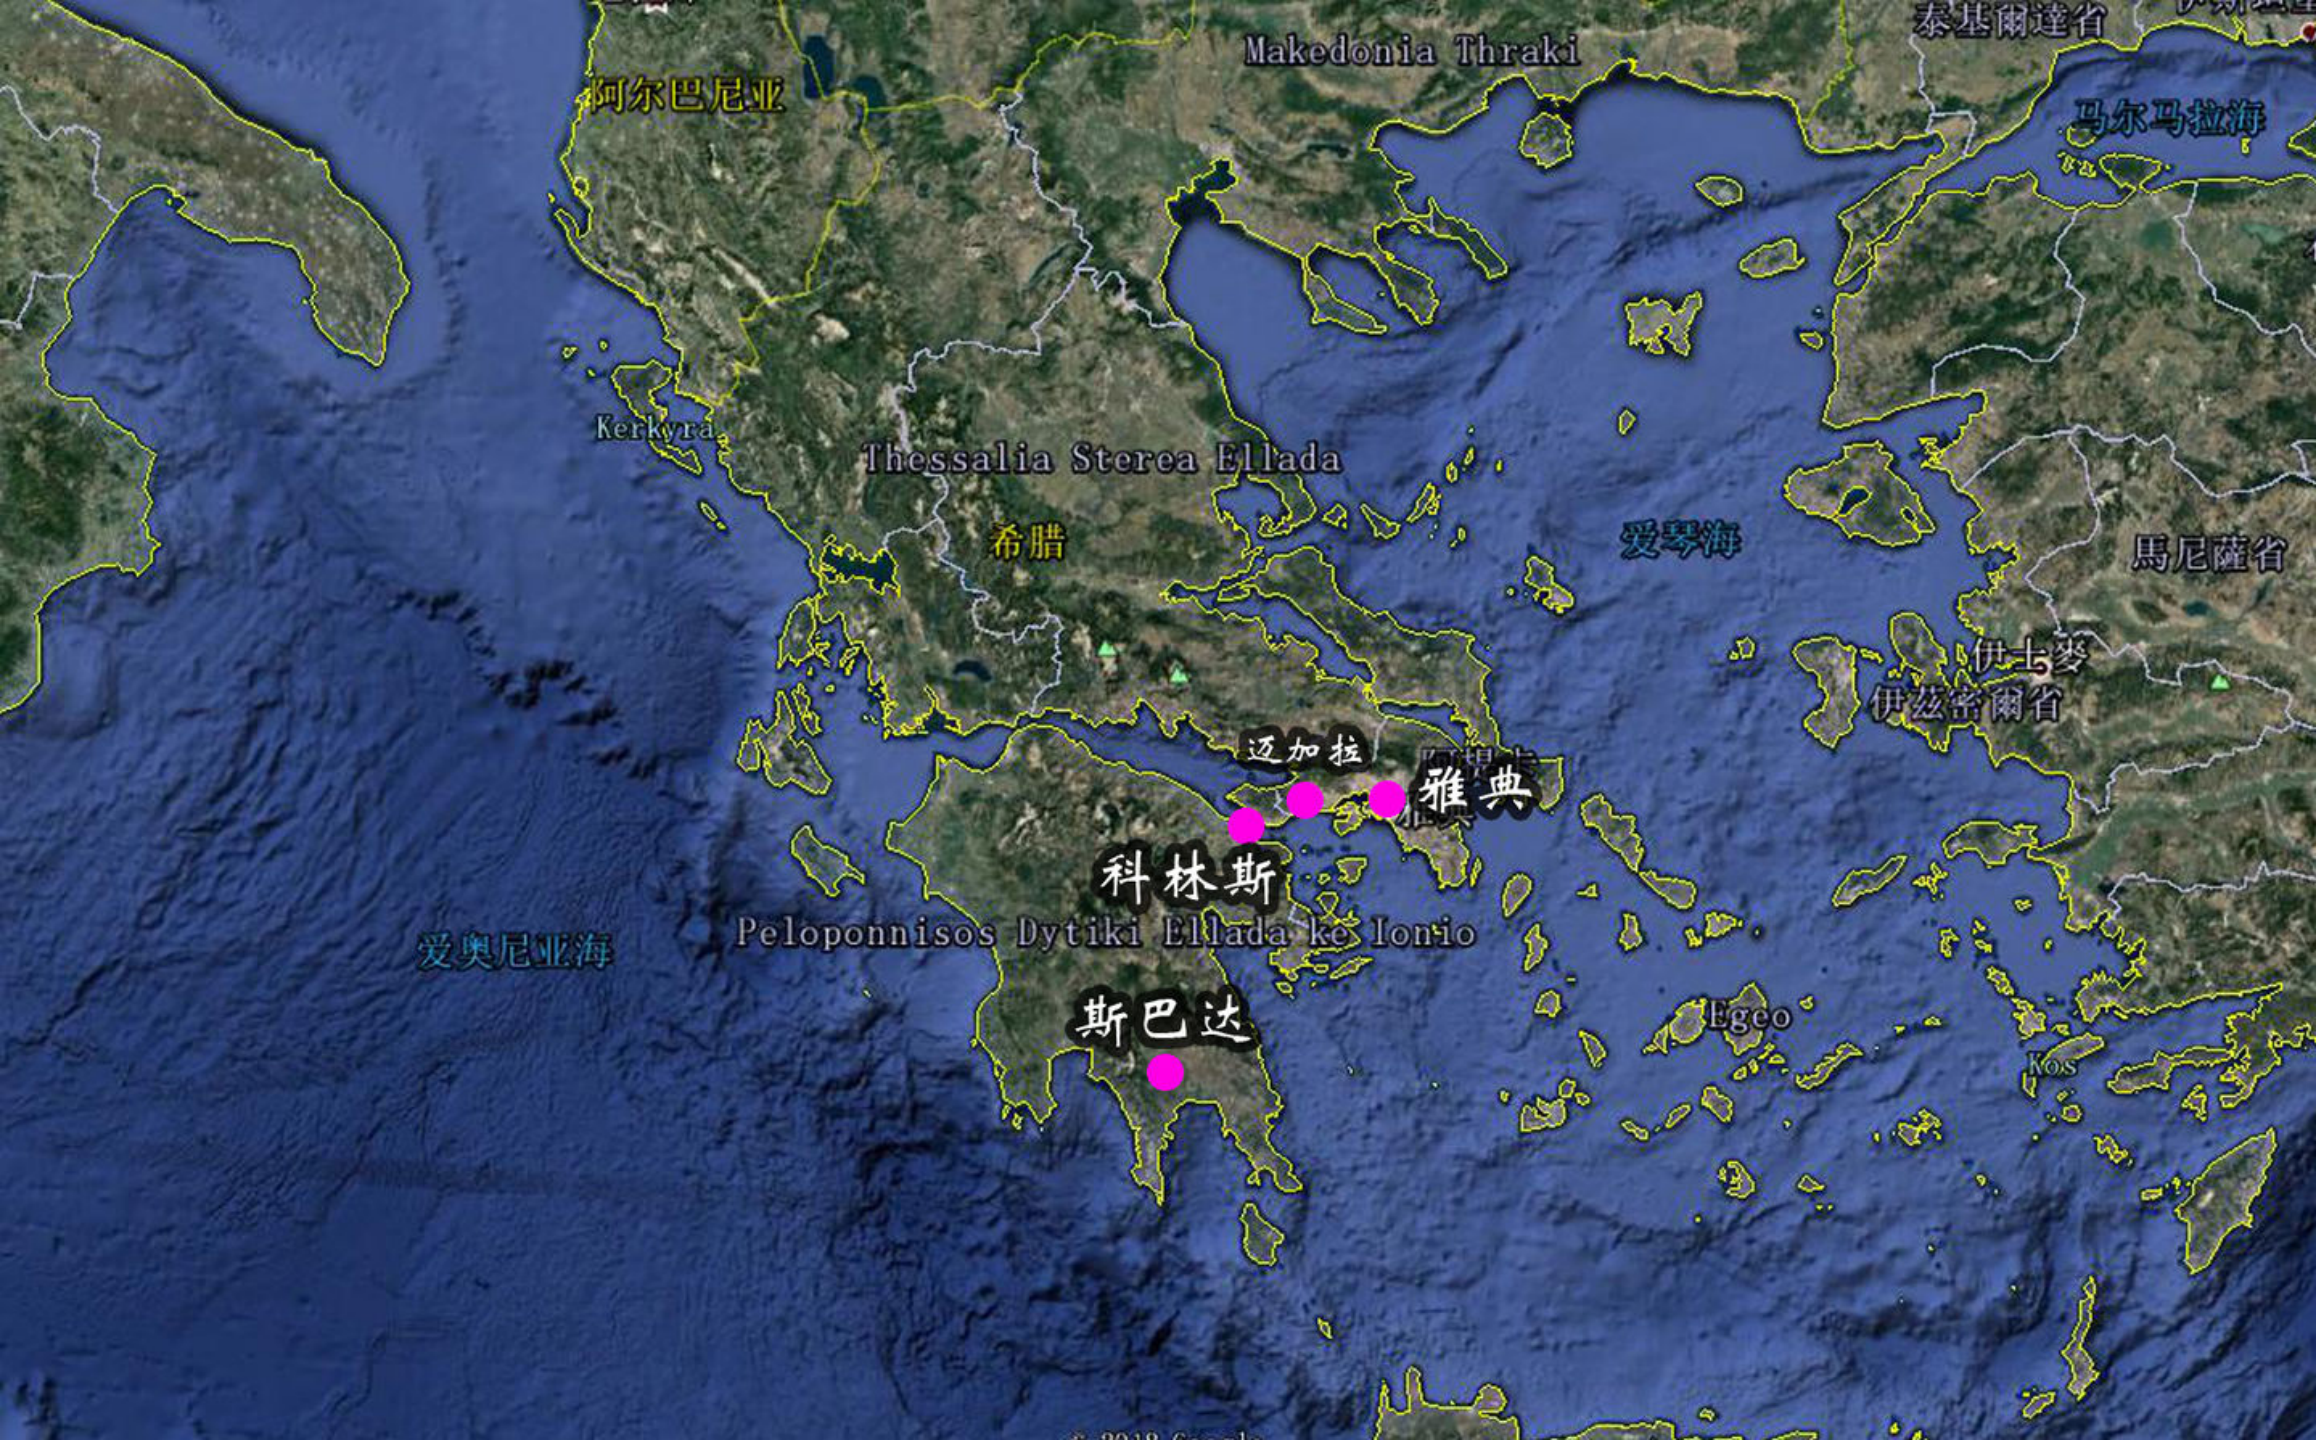 图 12:雅典最有名的三个城邦——雅典,科林斯,斯巴达位置示意图